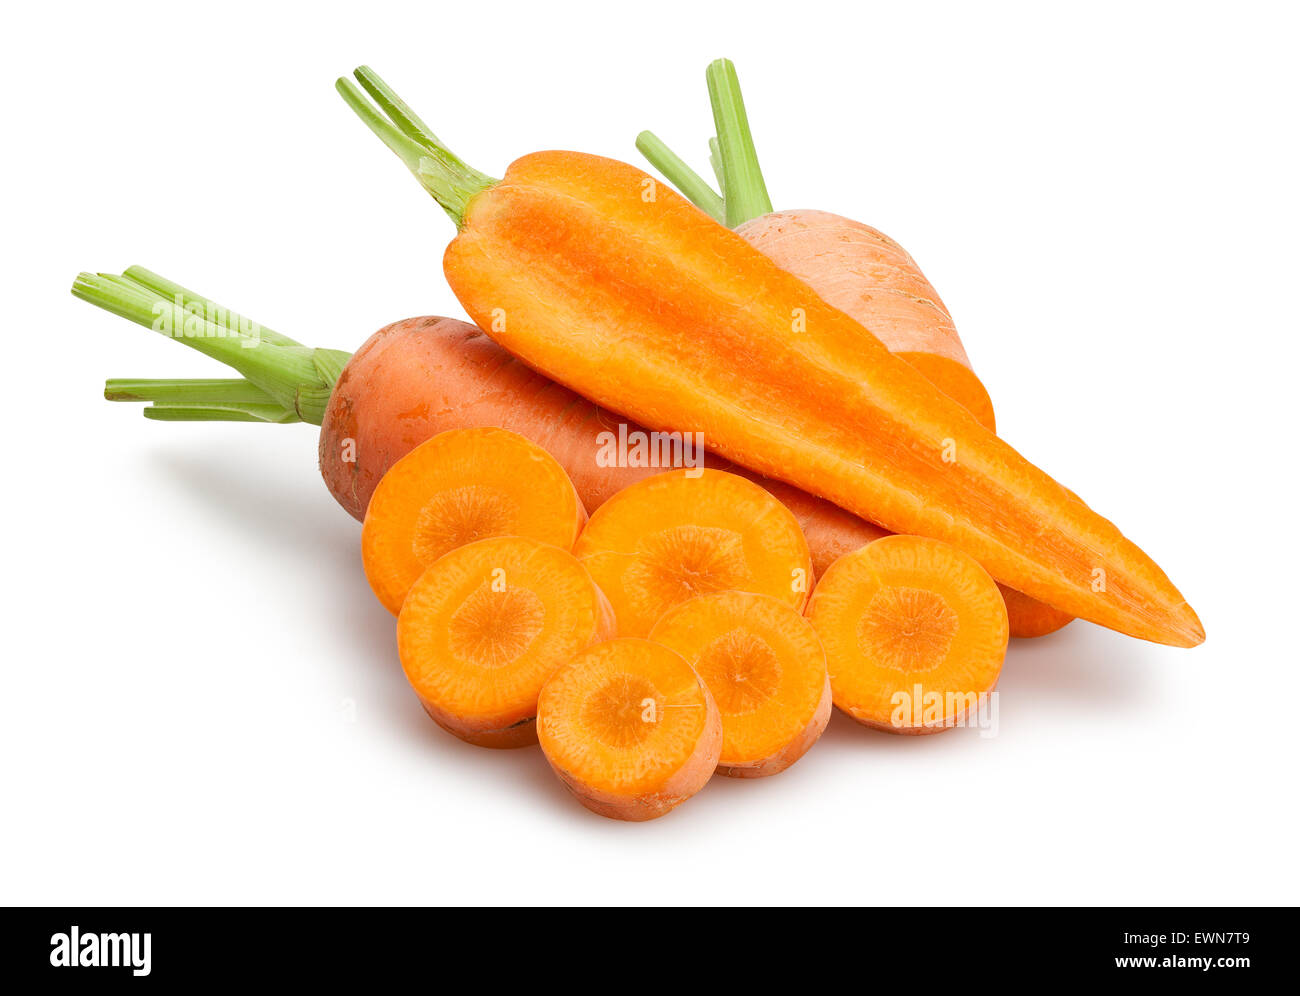 carrots isolated Stock Photo